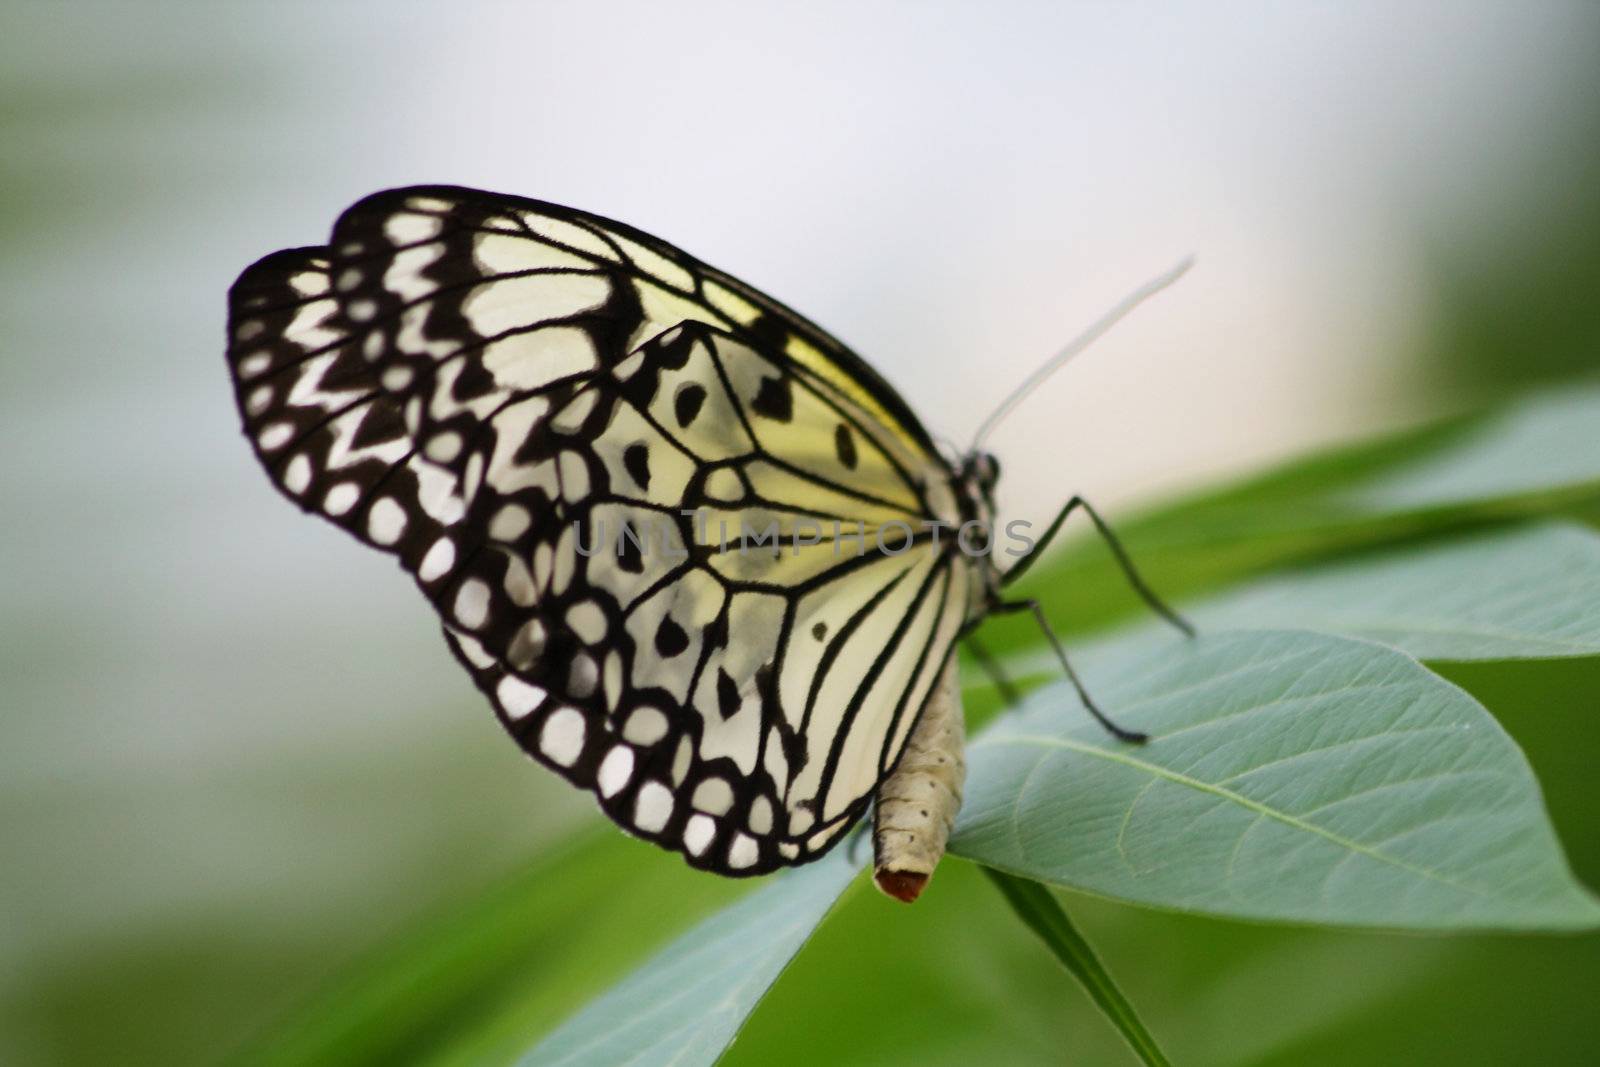 Butterfly wings by Lessadar